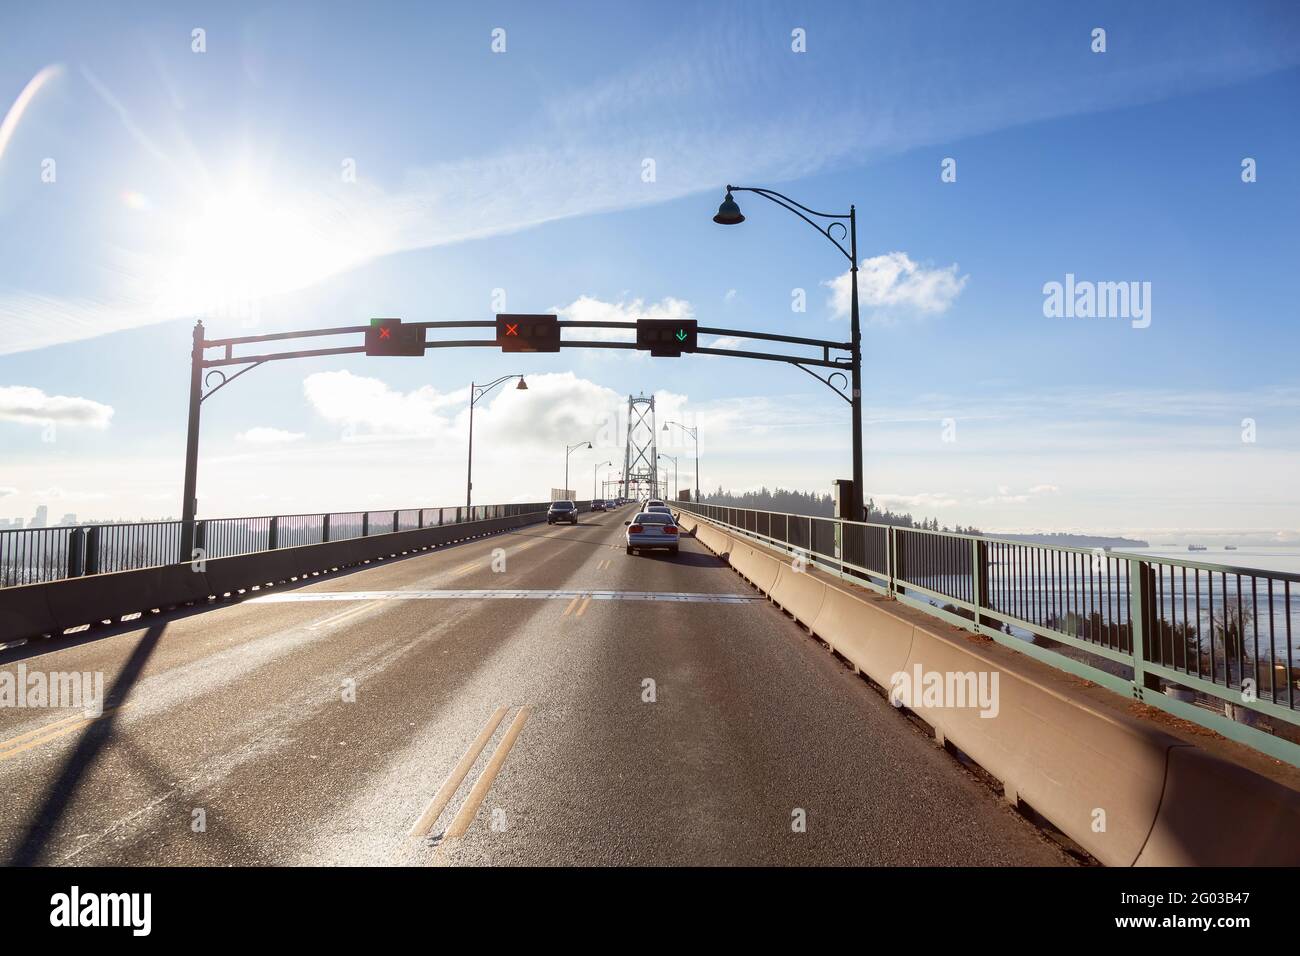 Fahren Sie über die berühmte Lions Gate Bridge in der modernen Innenstadt. Stockfoto